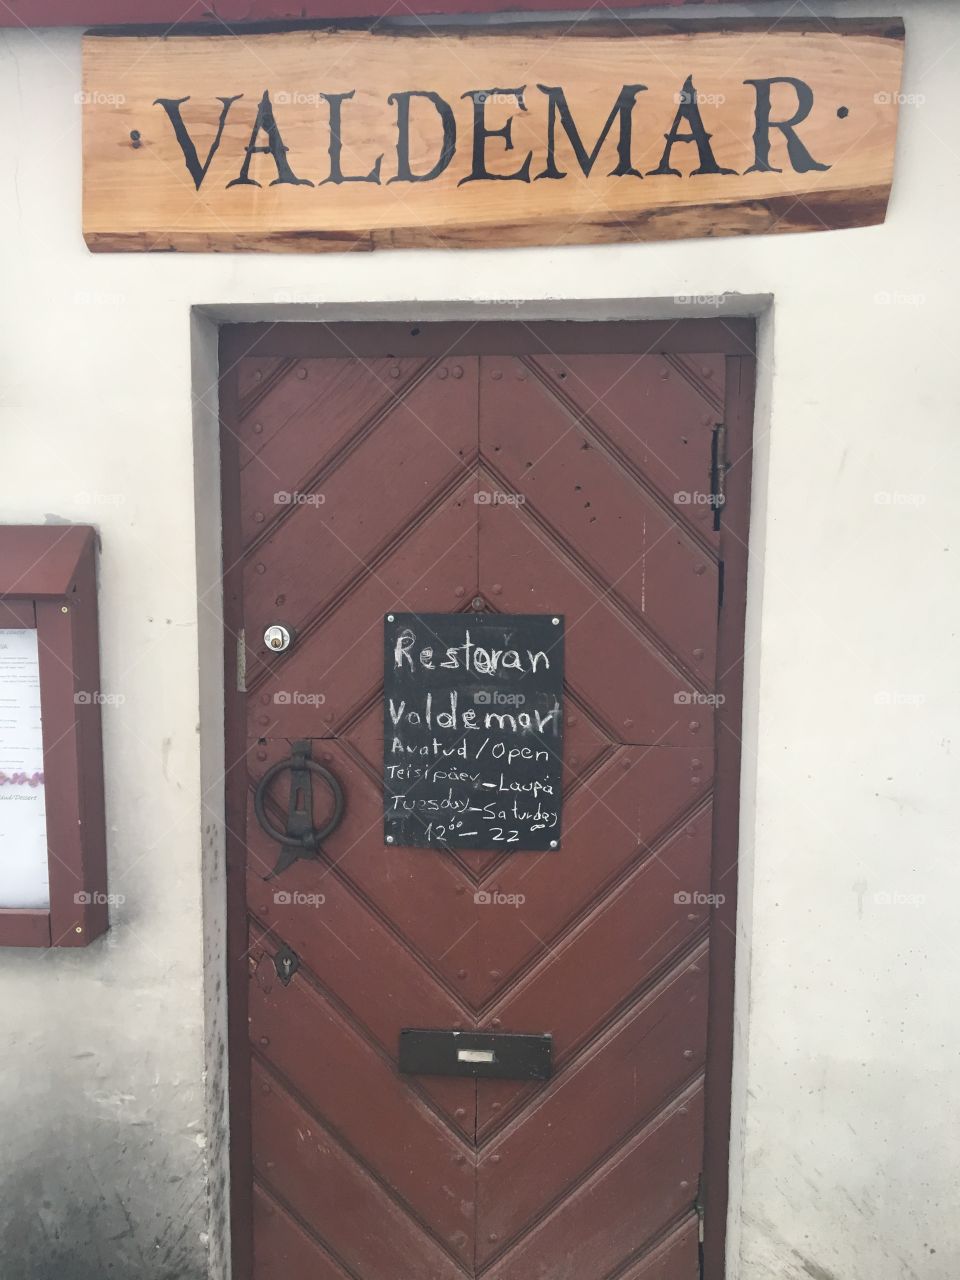 Restaurant door play on words 